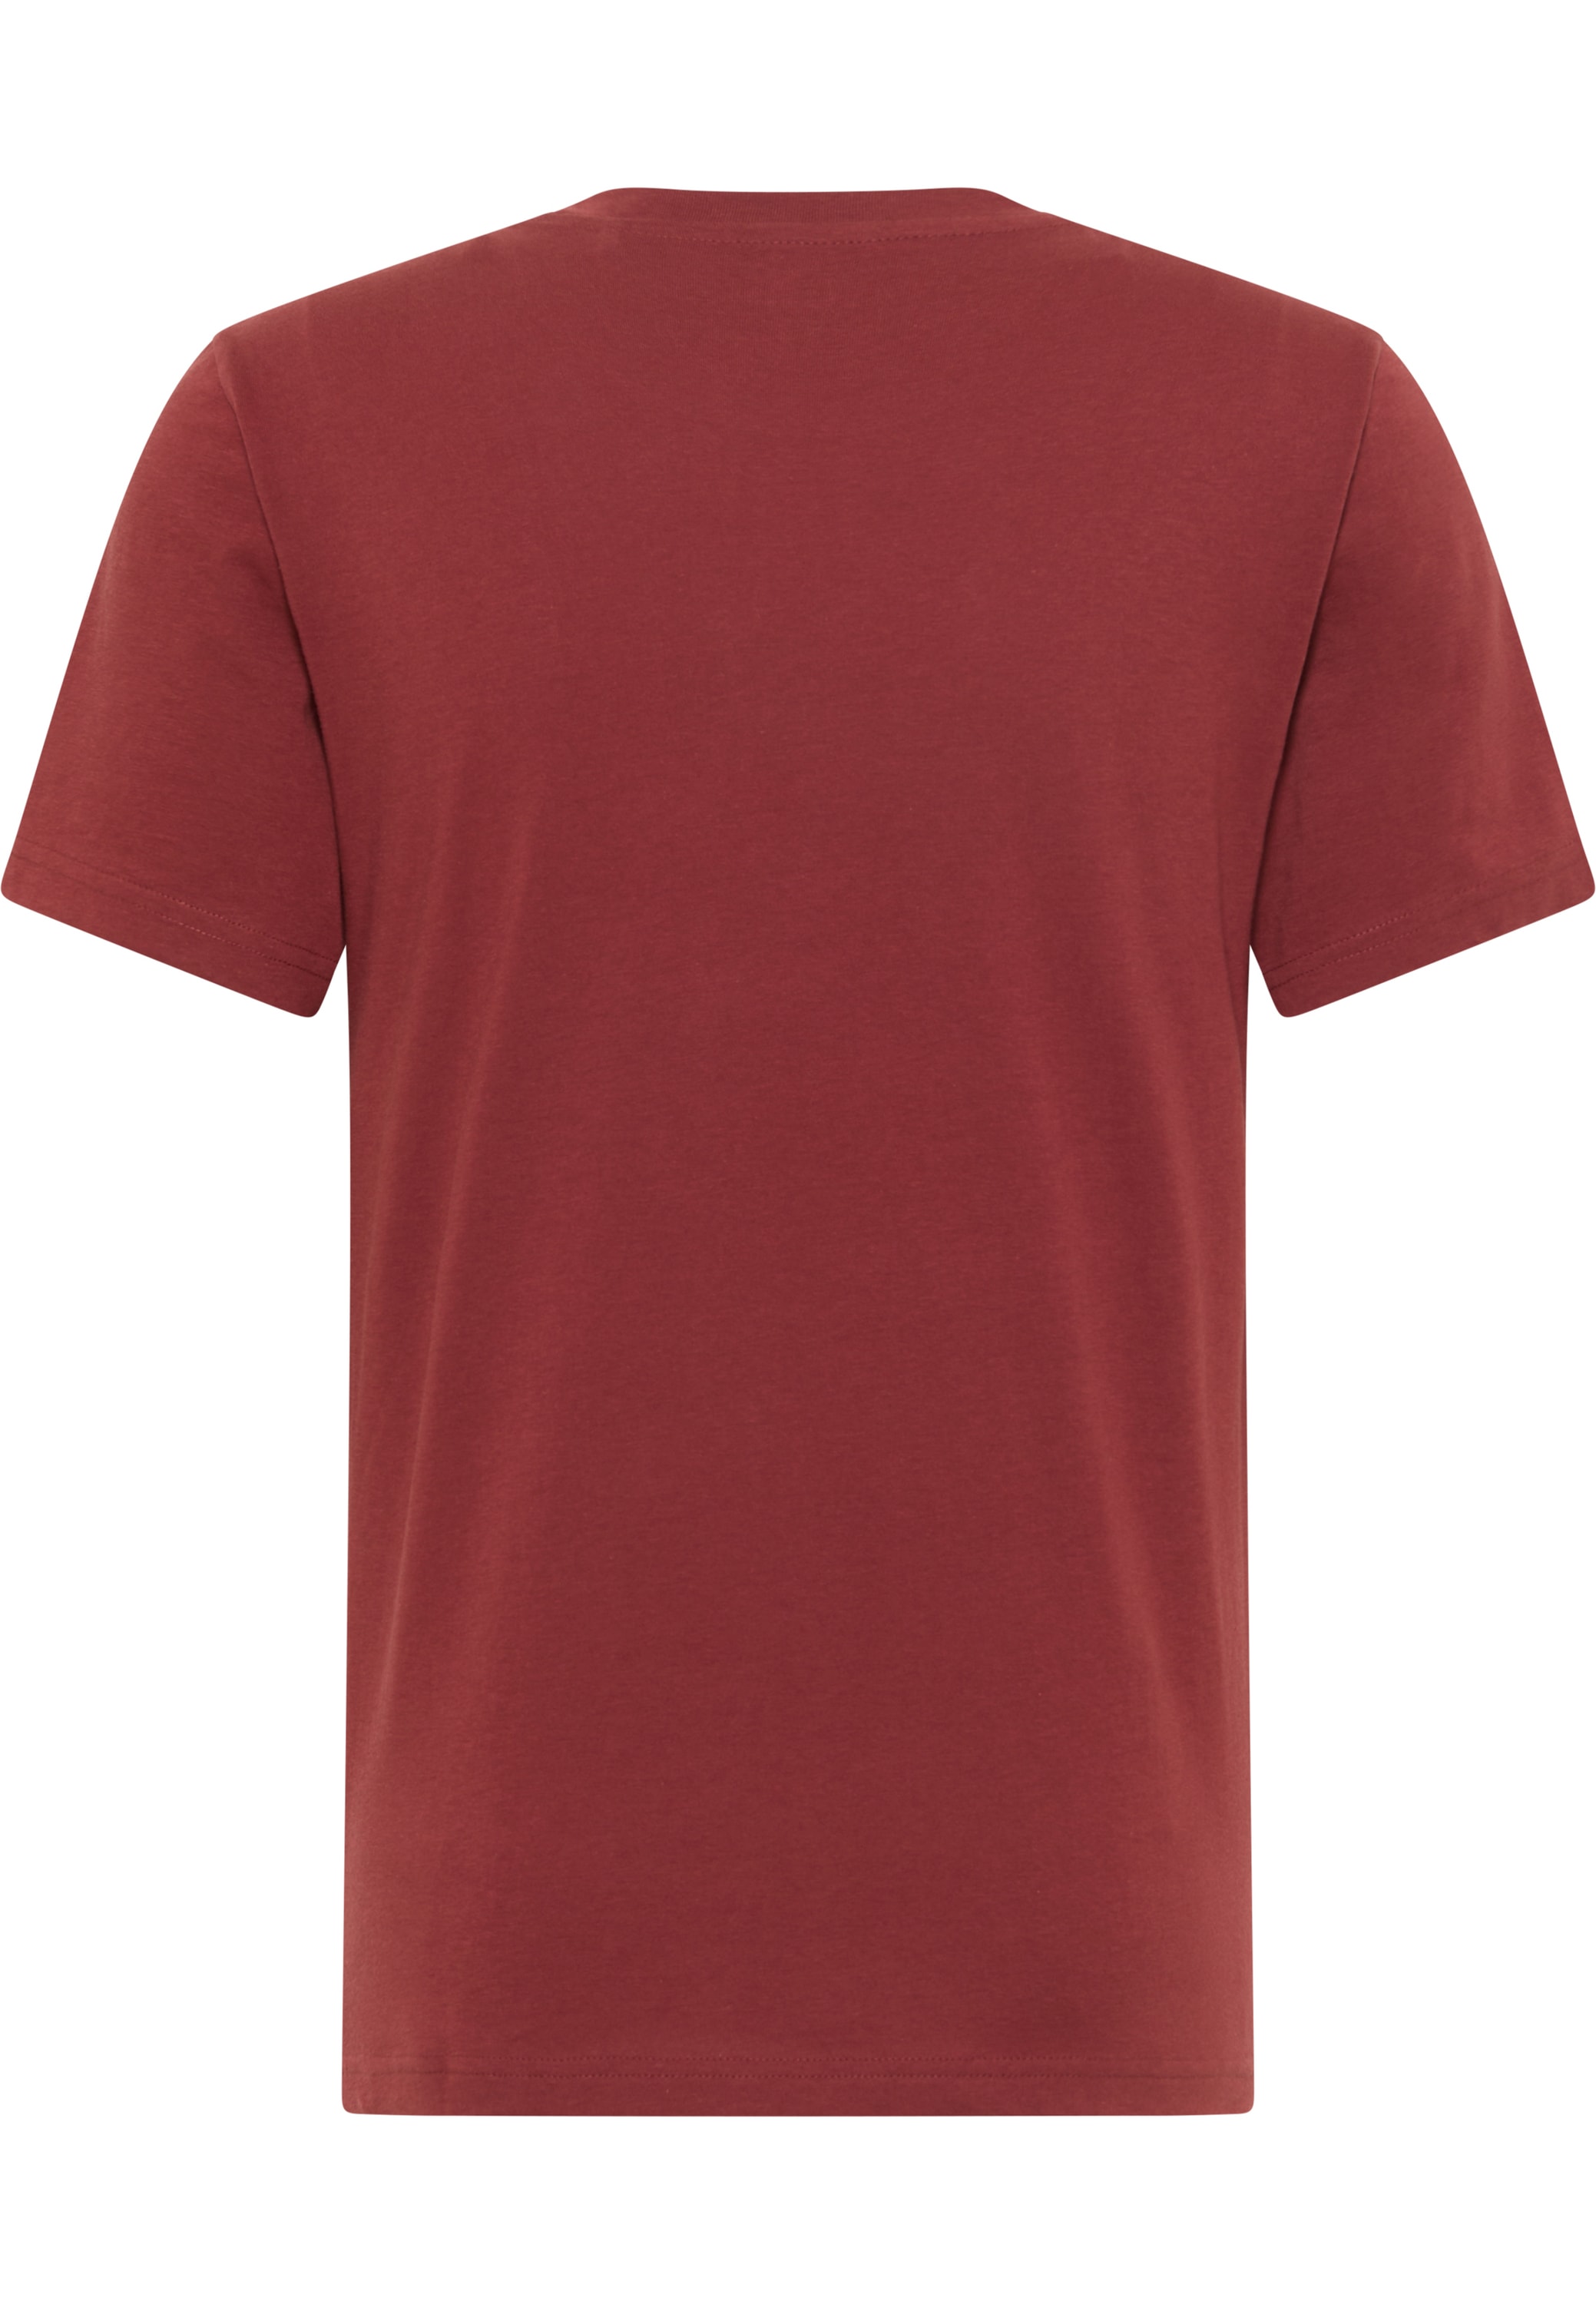 MUSTANG Kurzarmshirt »Mustang T-Shirt Print-Shirt« online bei